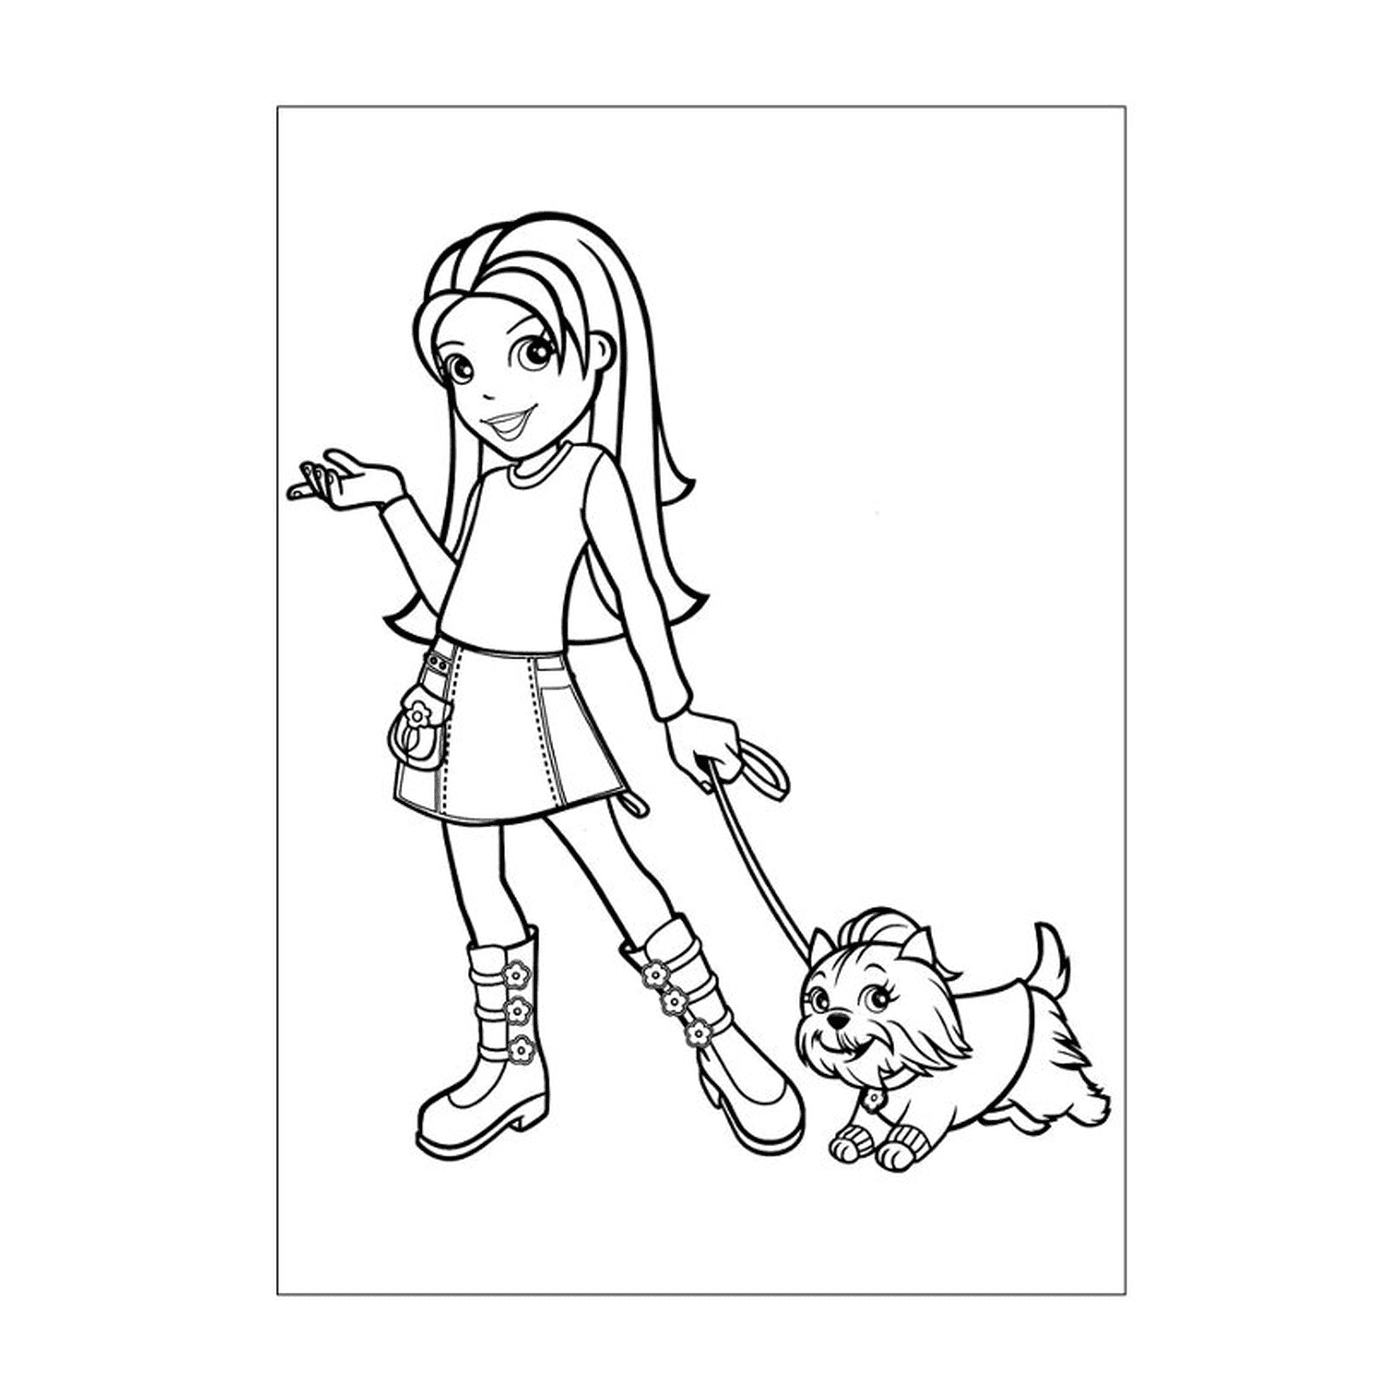   Une fille promenant un chien en laisse 